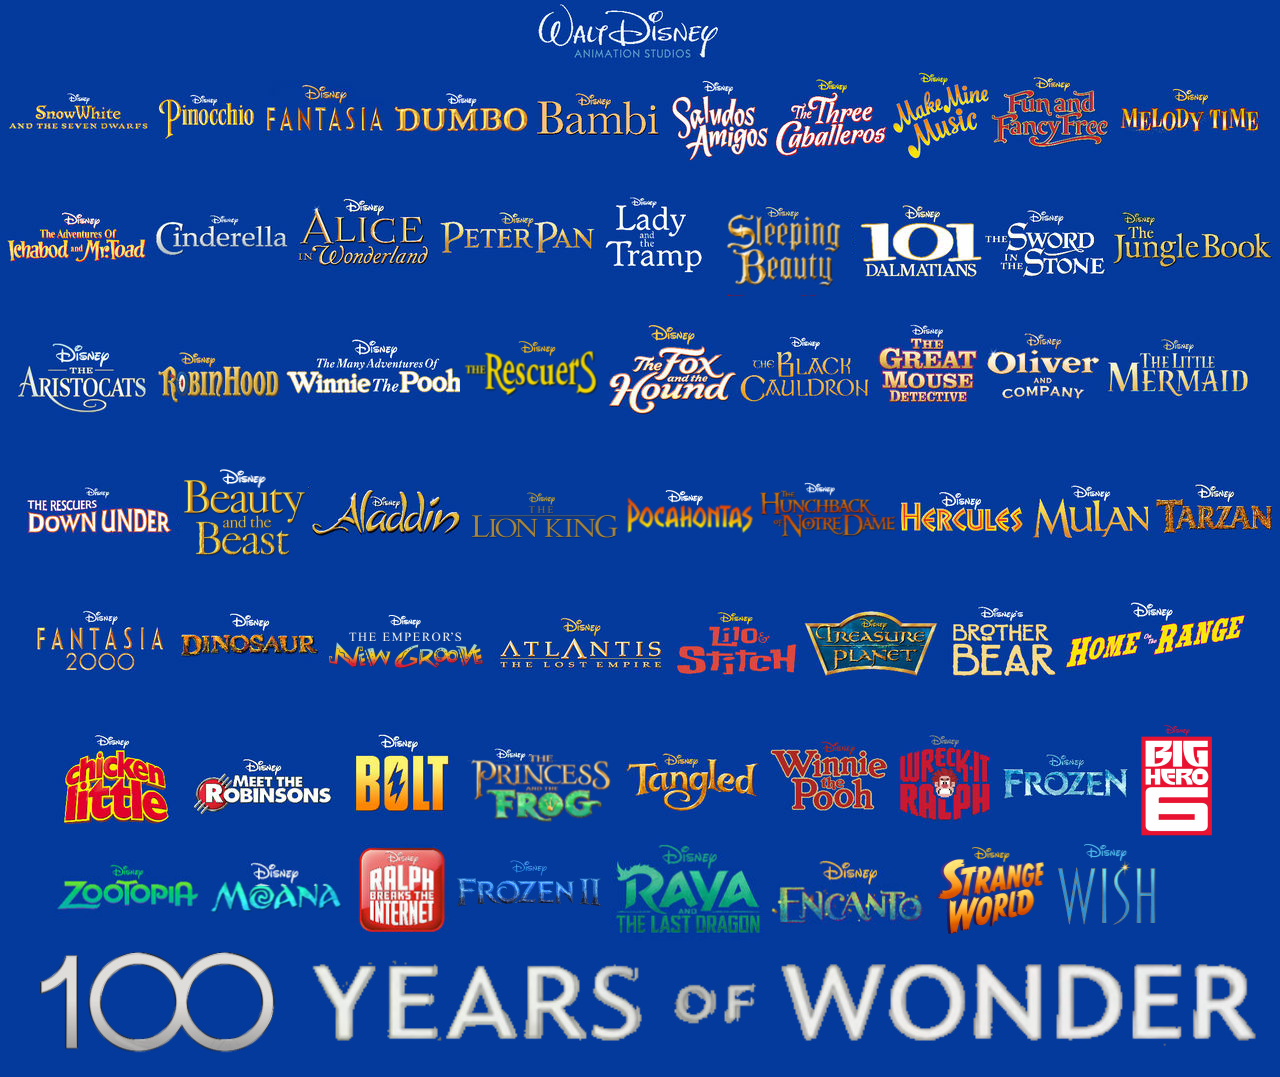 The next 100 years of wonder by facussparkle2002 on DeviantArt